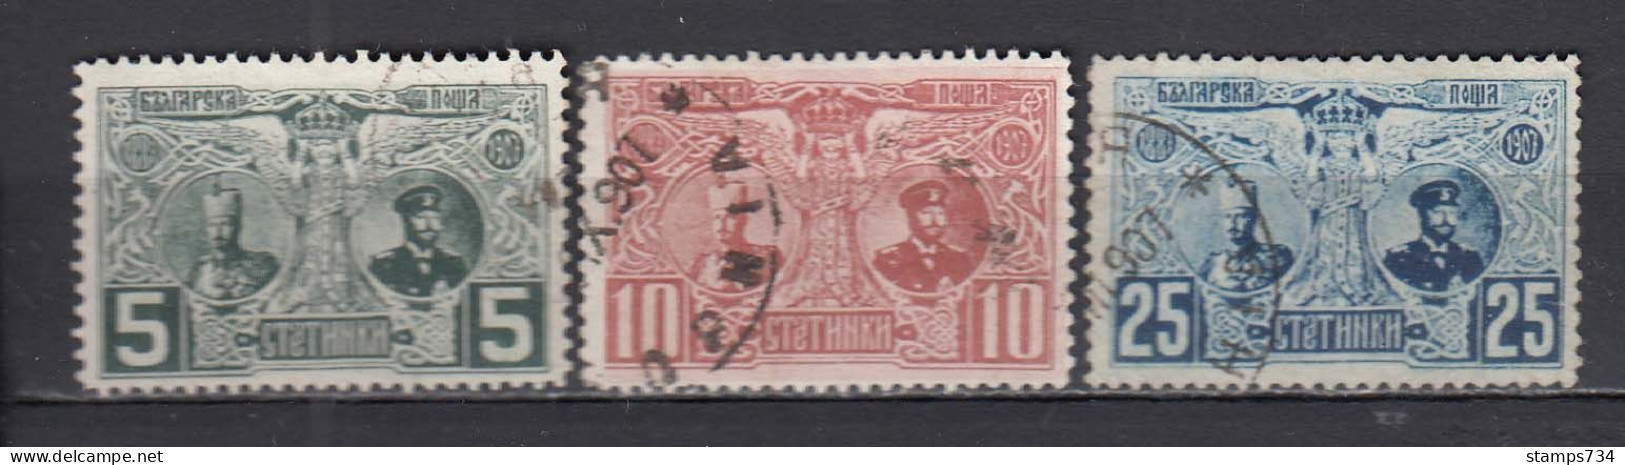 Bulgarie 1907 - 20 Ann. De Regne De Ferdinand I, YT 69-71, Obliteres - Oblitérés